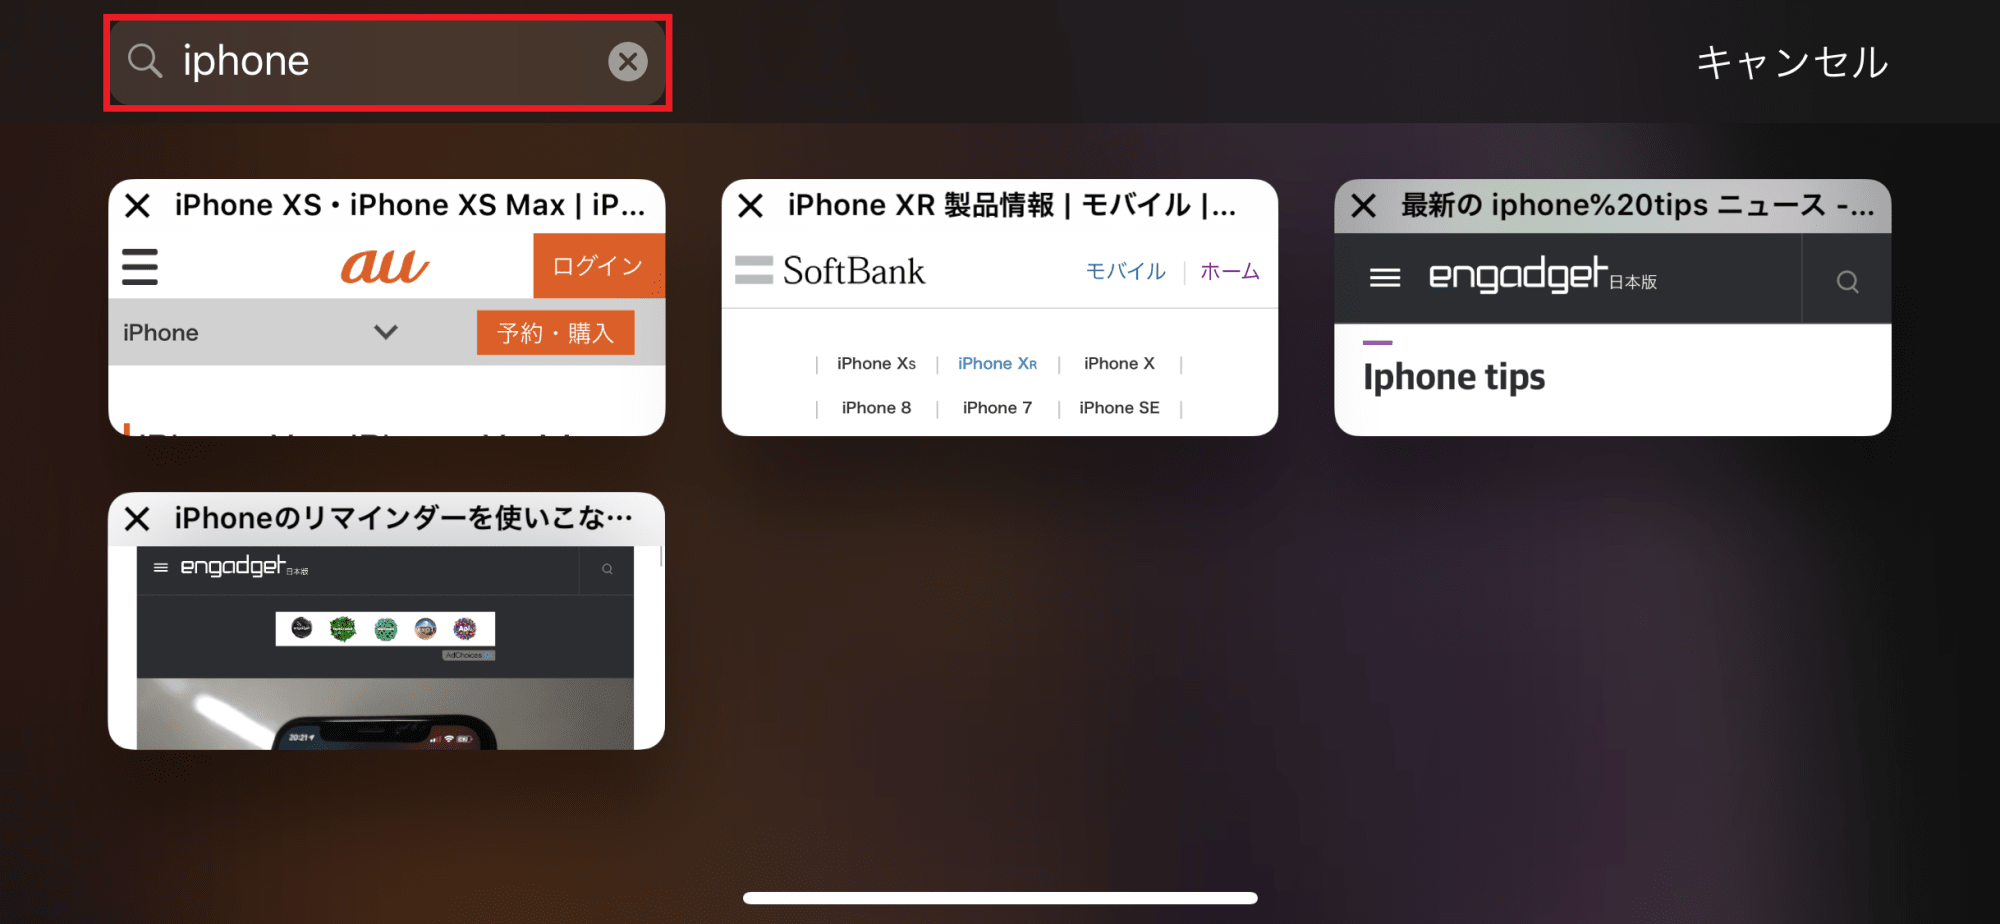 Iphoneのランドスケープモードだけで使える便利機能をおさらい Iphone Tips Engadget 日本版